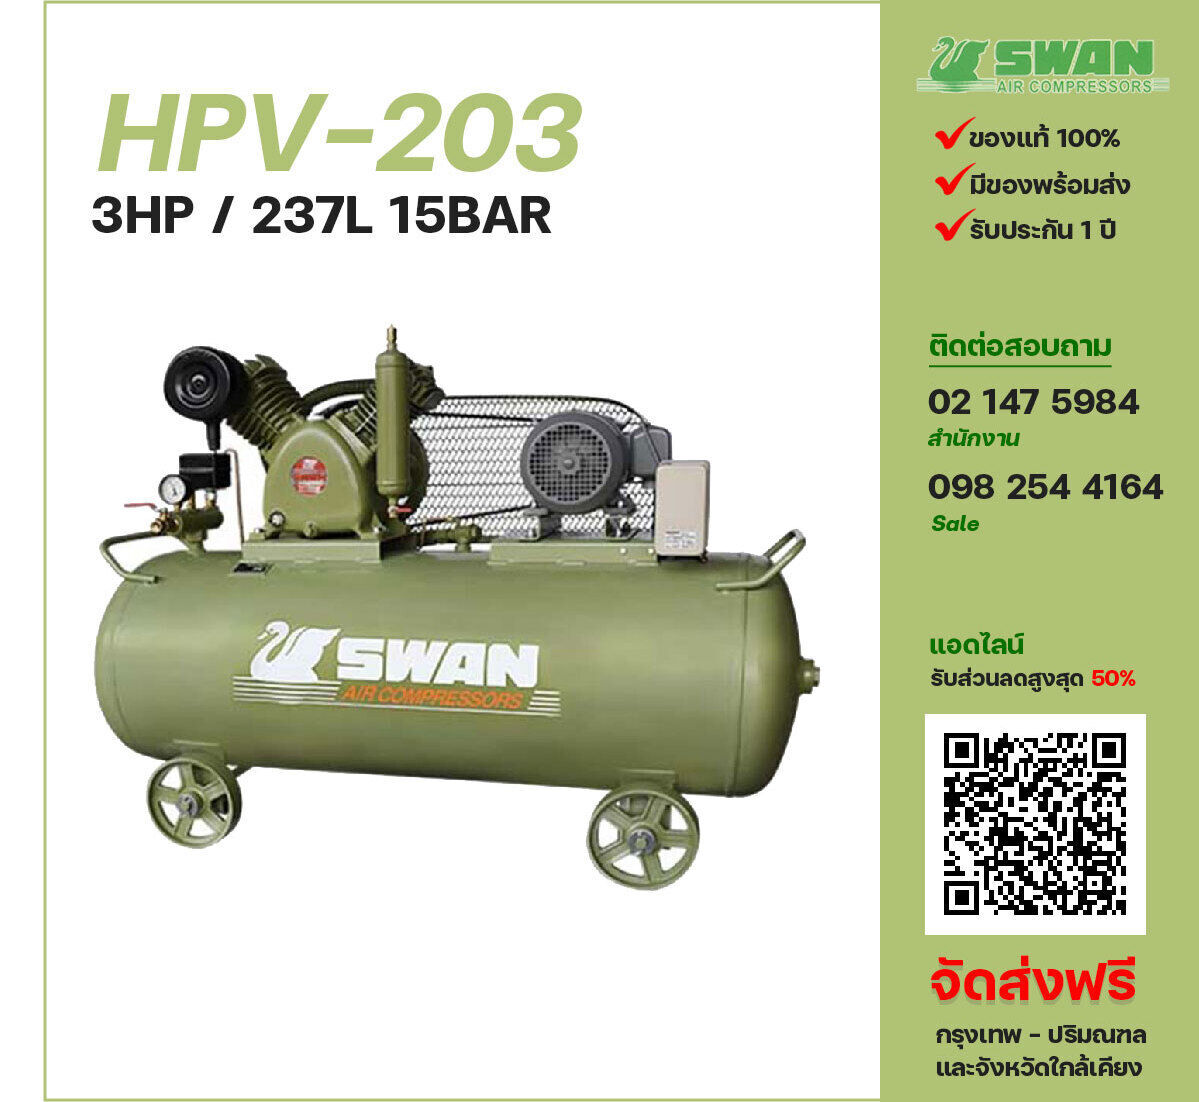 ปั๊มลมสวอนแรงดันสูง SWAN HPV-203 220V/380V ปั๊มลมลูกสูบ ขนาด 2 สูบ 3 แรงม้า 237 ลิตร SWAN พร้อมมอเตอร์ ไฟ 220V/380V ส่งฟรี กรุงเทพฯ-ปริมณฑล รับประกัน 1 ปี